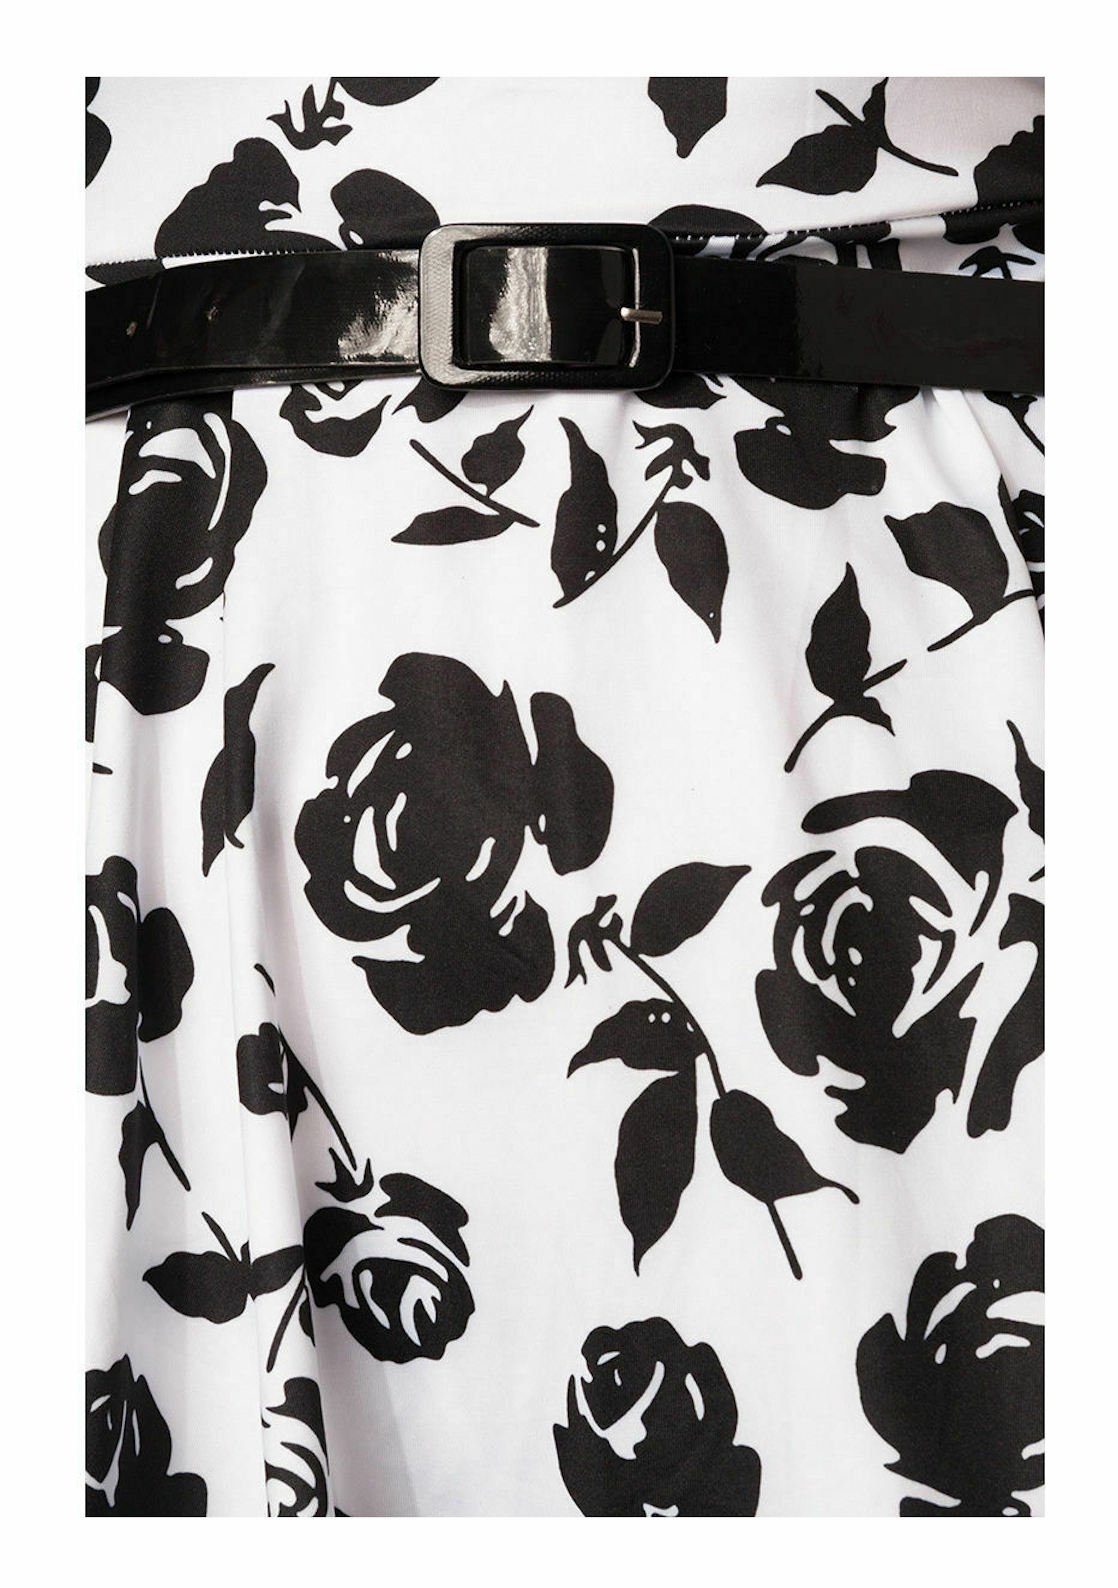 Sommerkleid Sommerkleid Minikleid Gürtel luftiges schwarz geblümt weiß Damen-Kleid